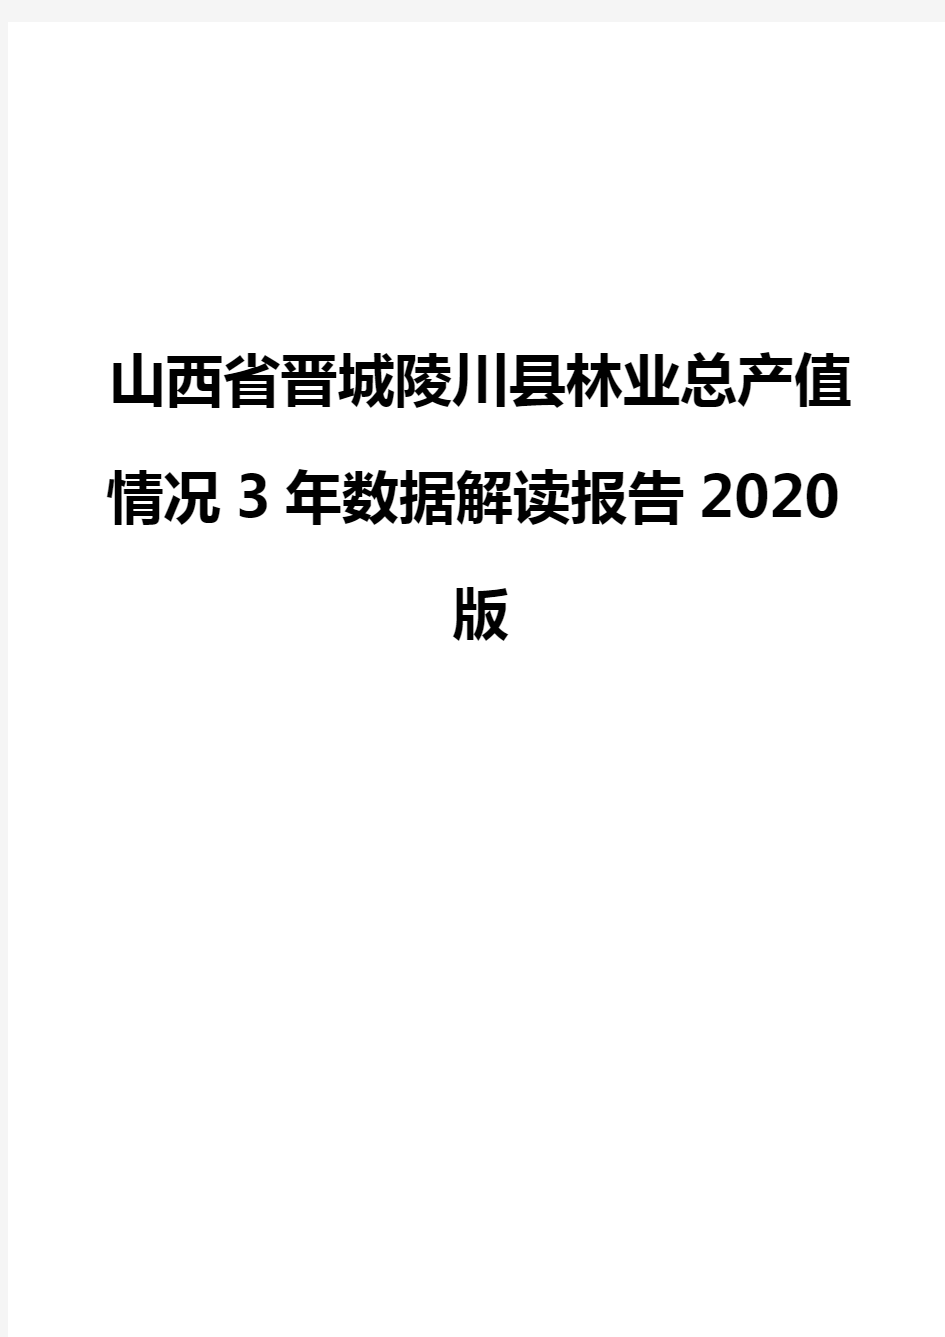 山西省晋城陵川县林业总产值情况3年数据解读报告2020版